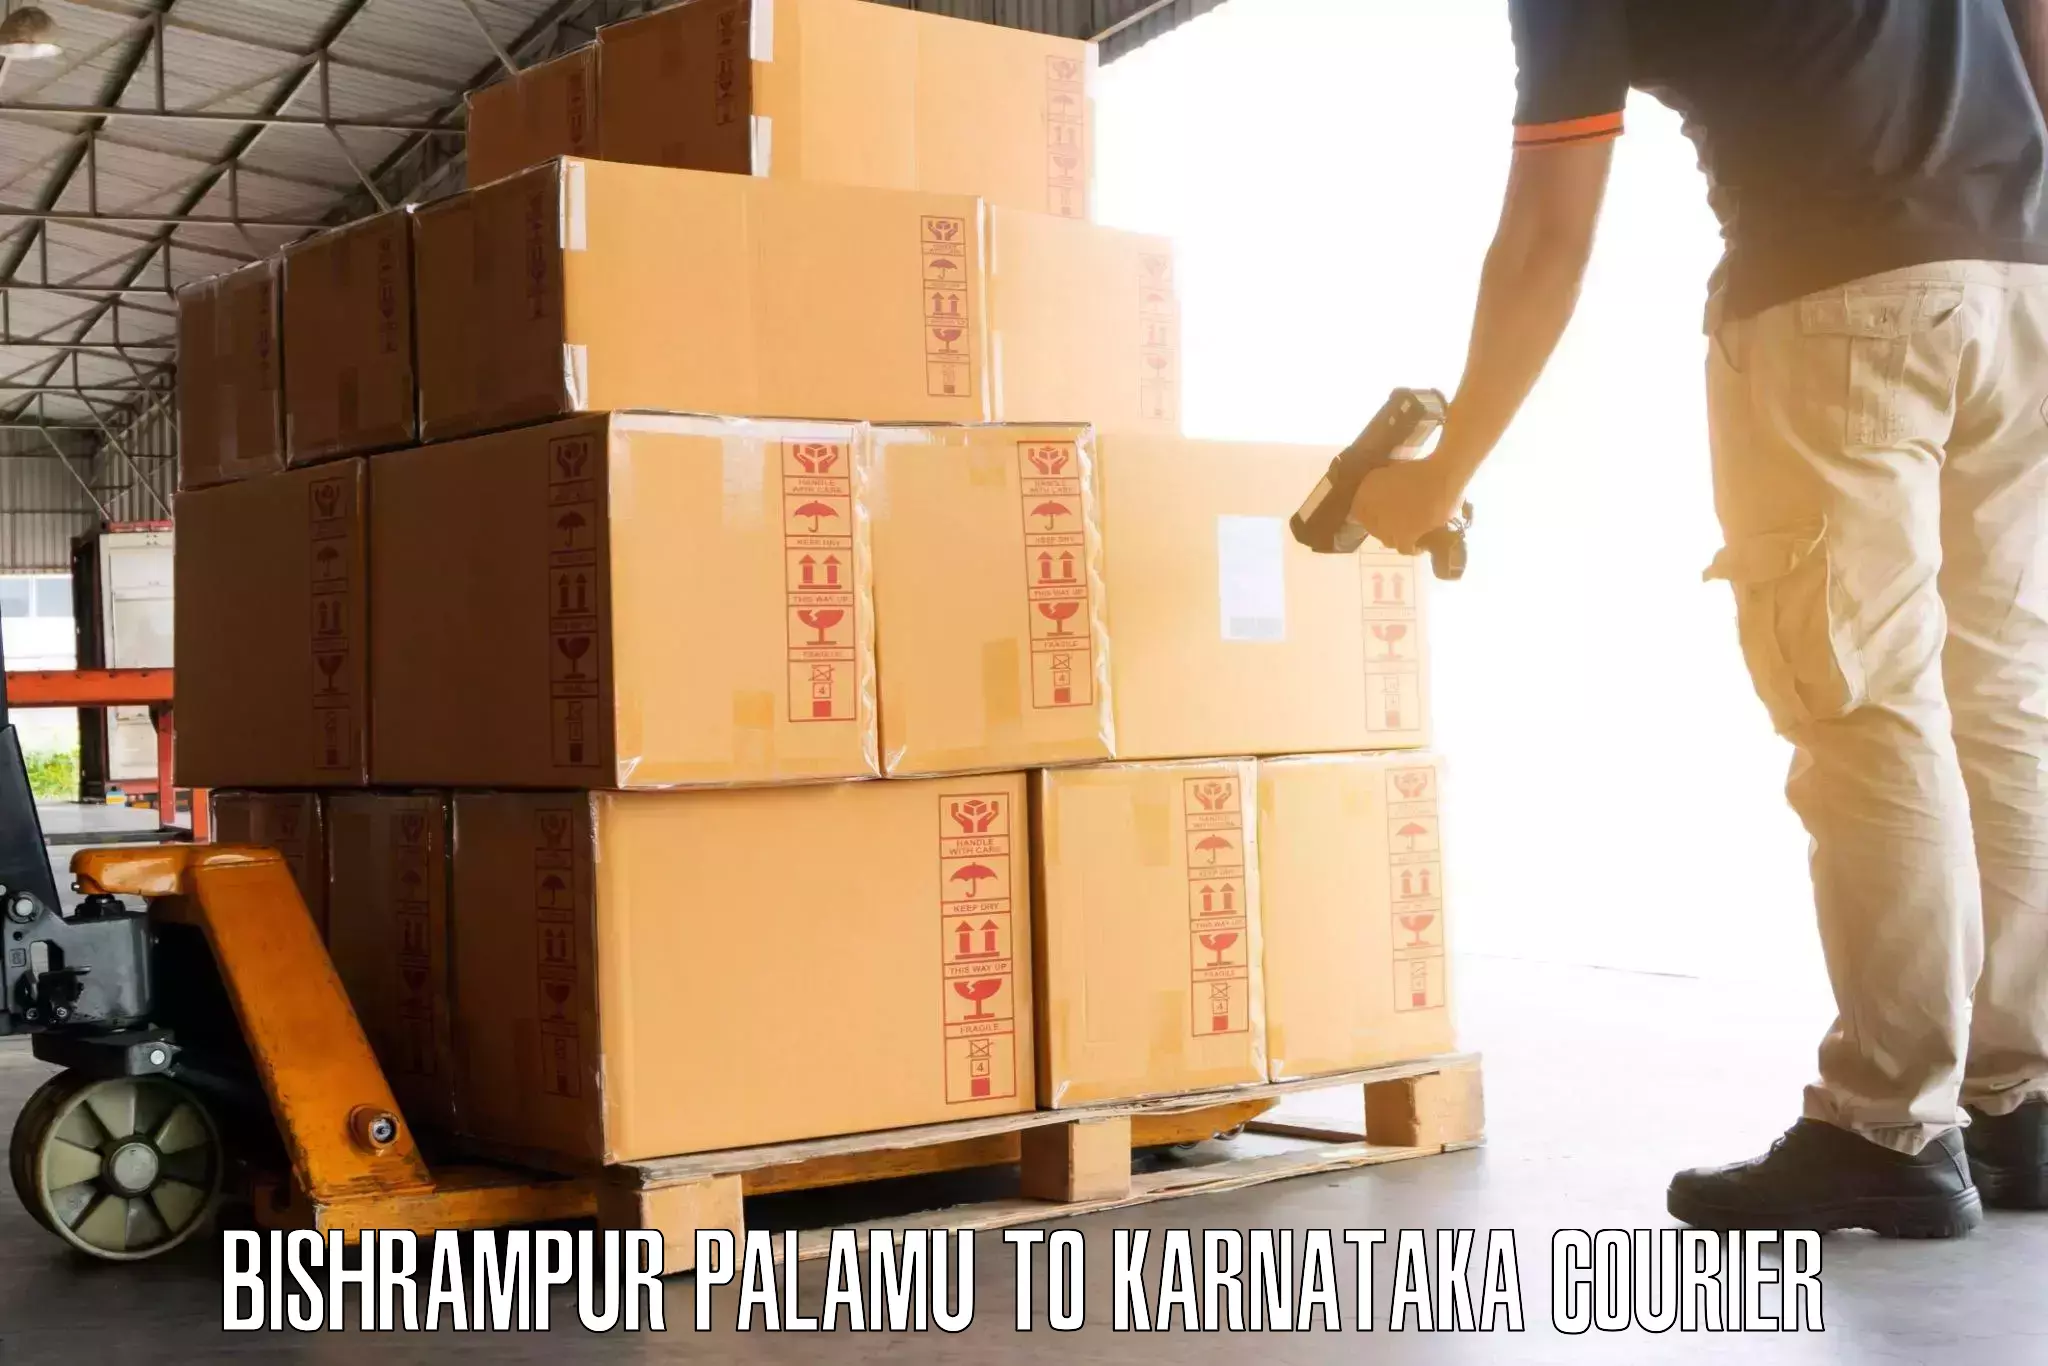 Baggage shipping service Bishrampur Palamu to Kumta